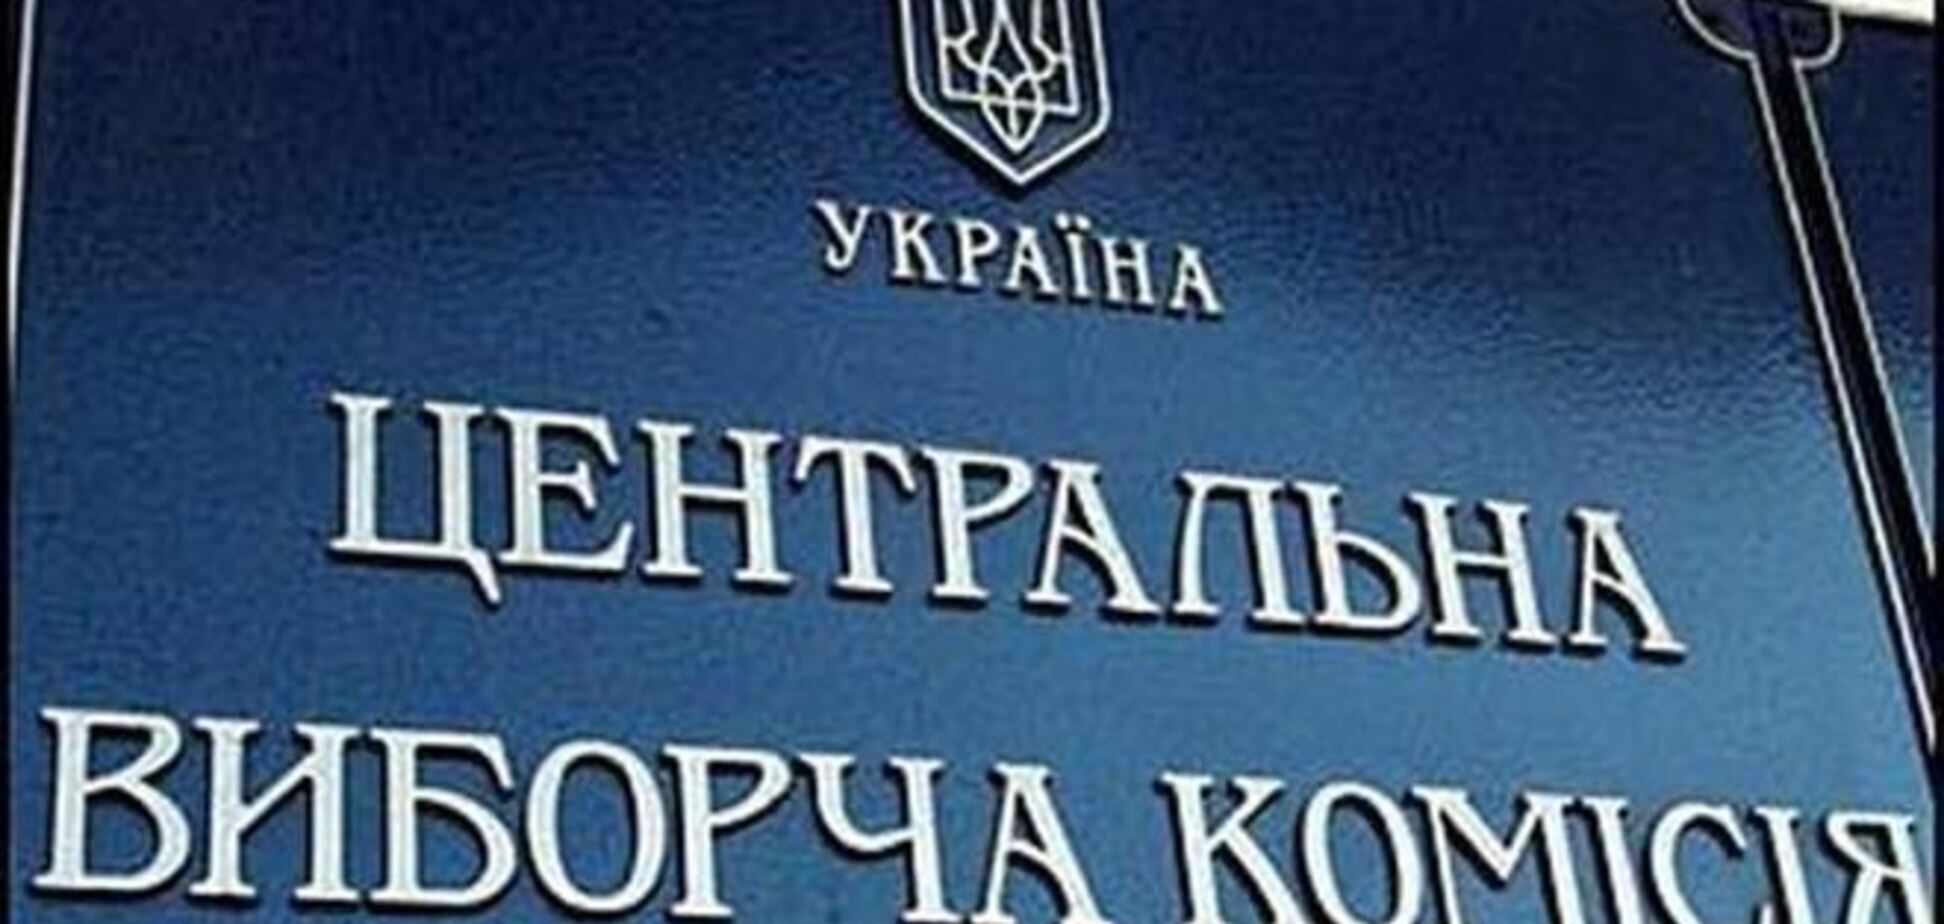 ЦВК зареєструвала 7 кандидатів у президенти: серед них - Тимошенко і Порошенко